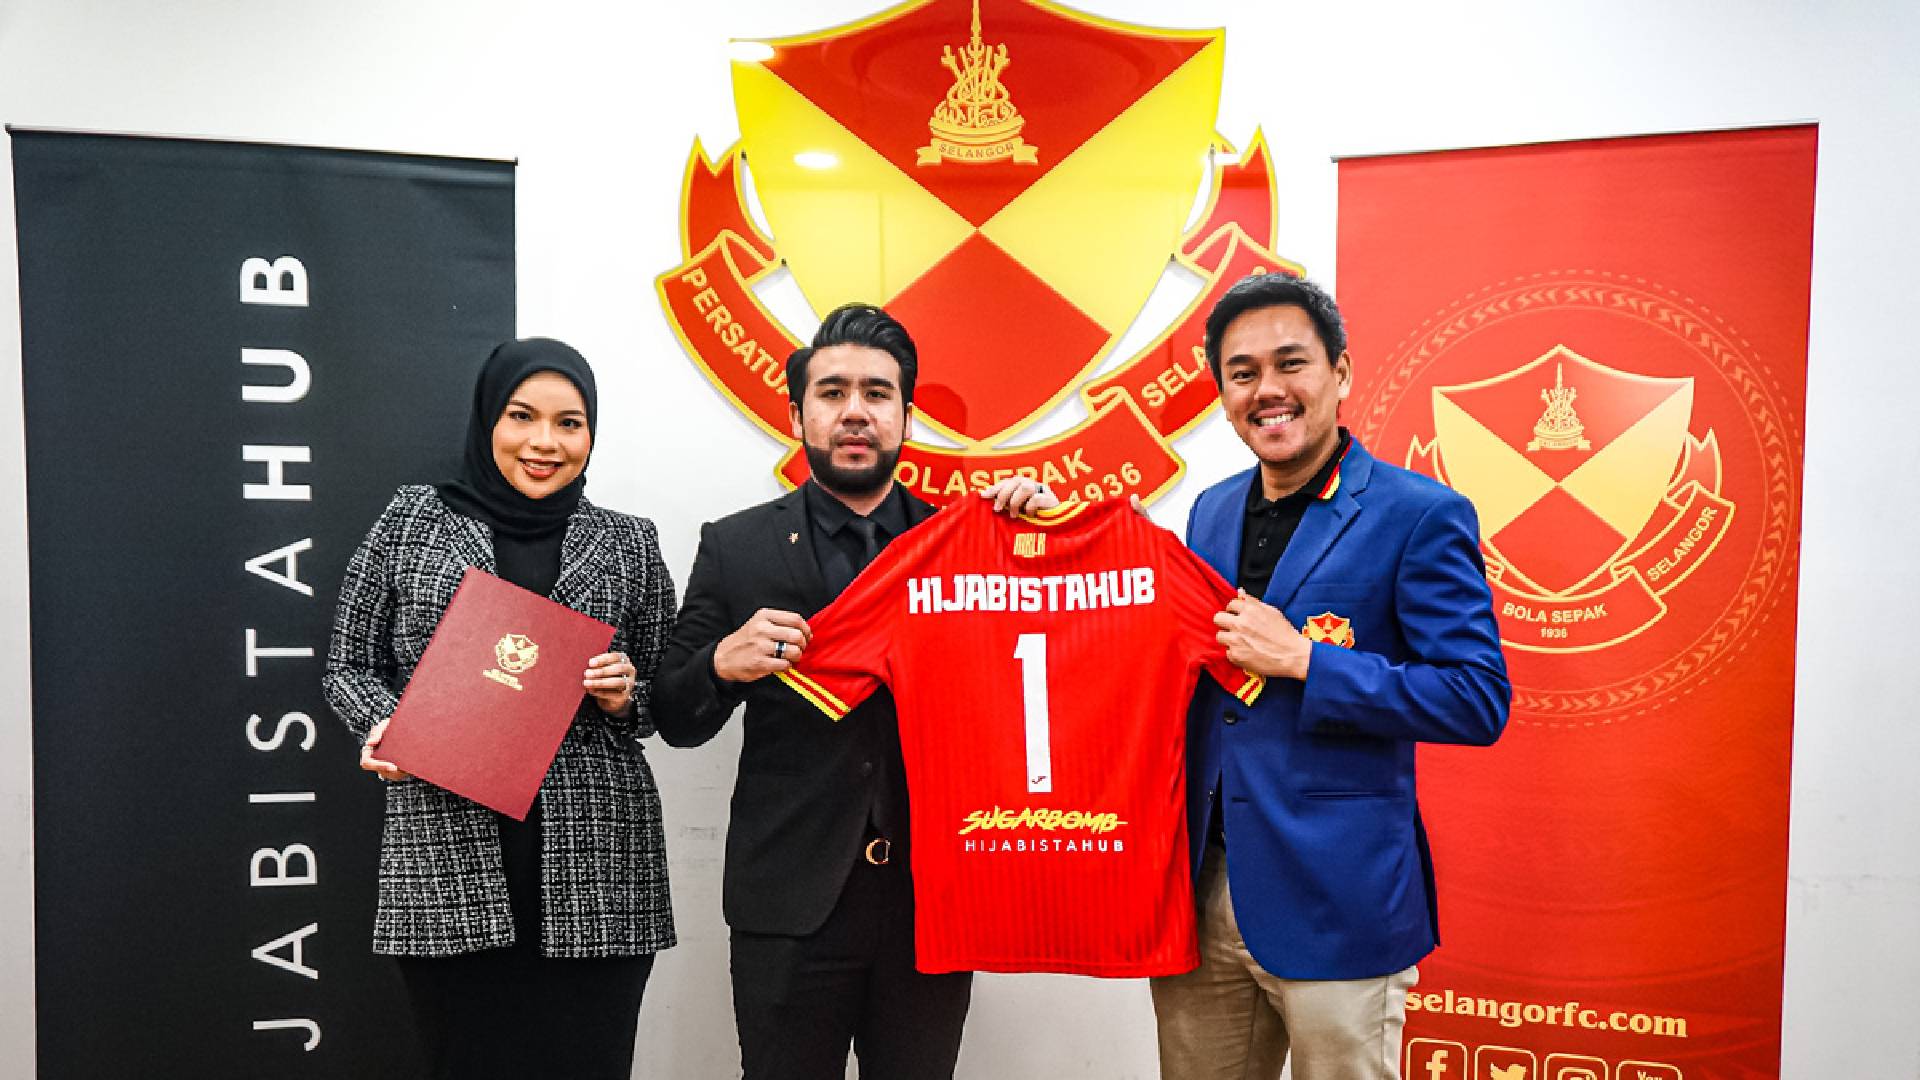 HijabistaHub Selangor FC Selangor Jalin Kerjasama Dengan Butik Terkenal, HijabistaHub